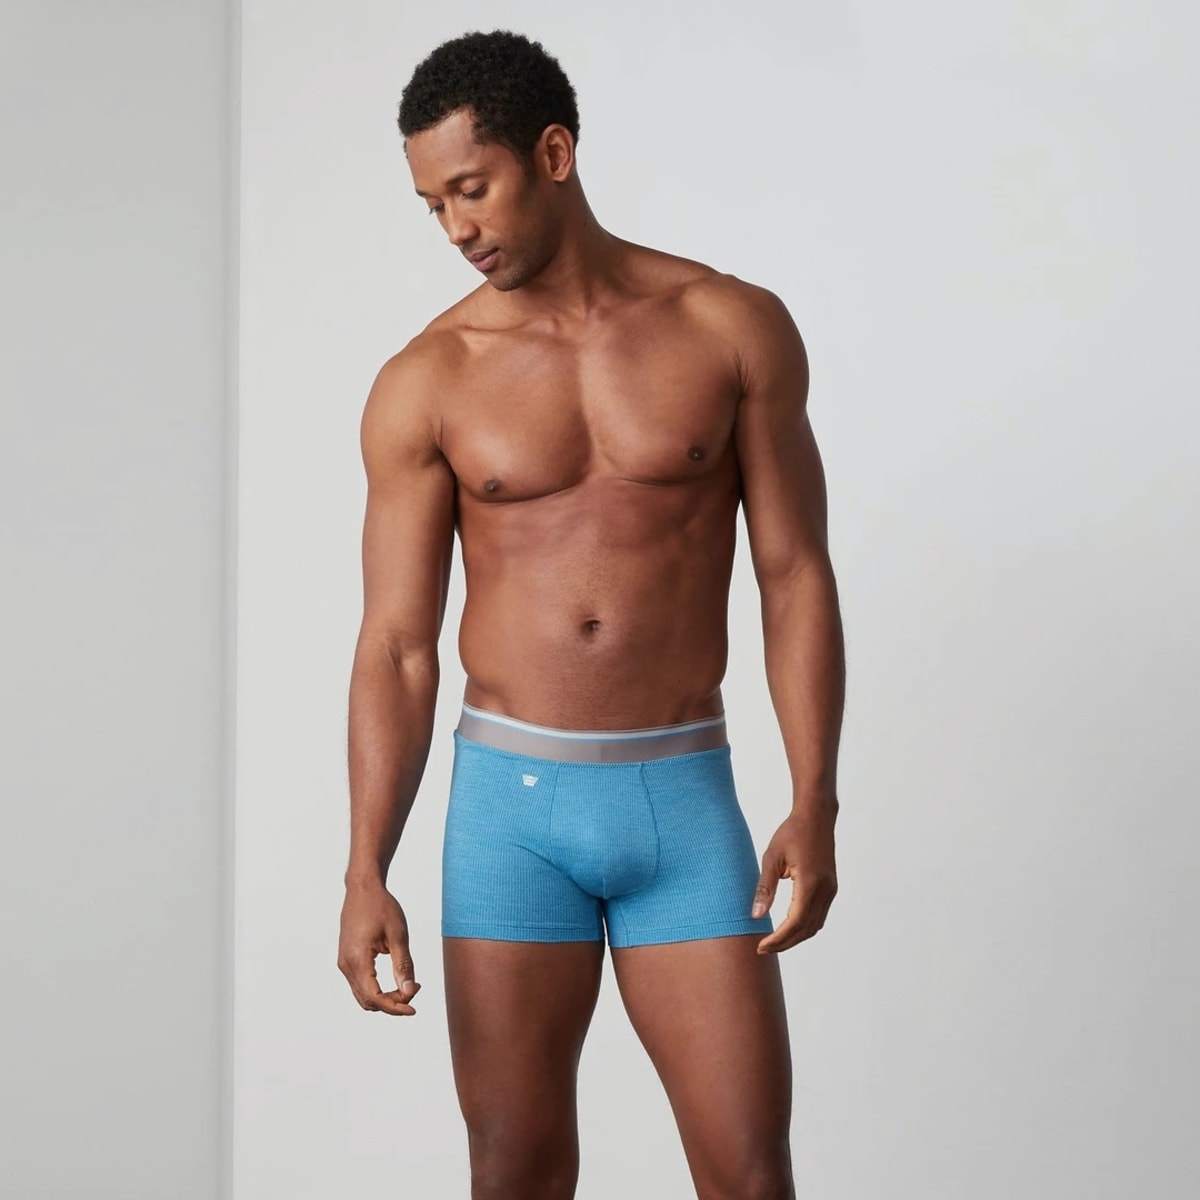 T-Bô Briefs (S) - Underwear & Socks